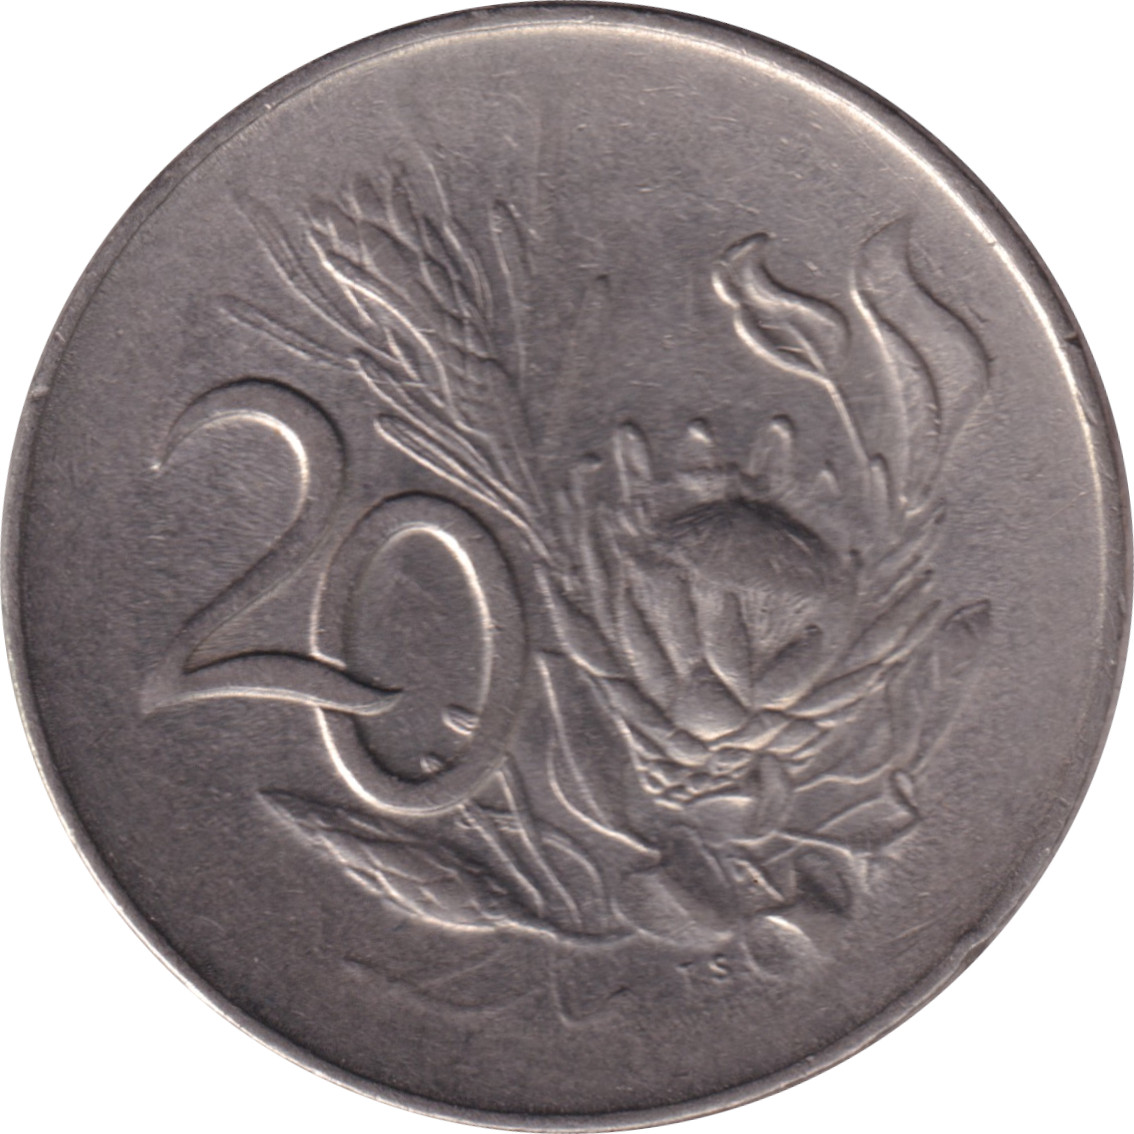 20 cents - Jan van Riebeeck